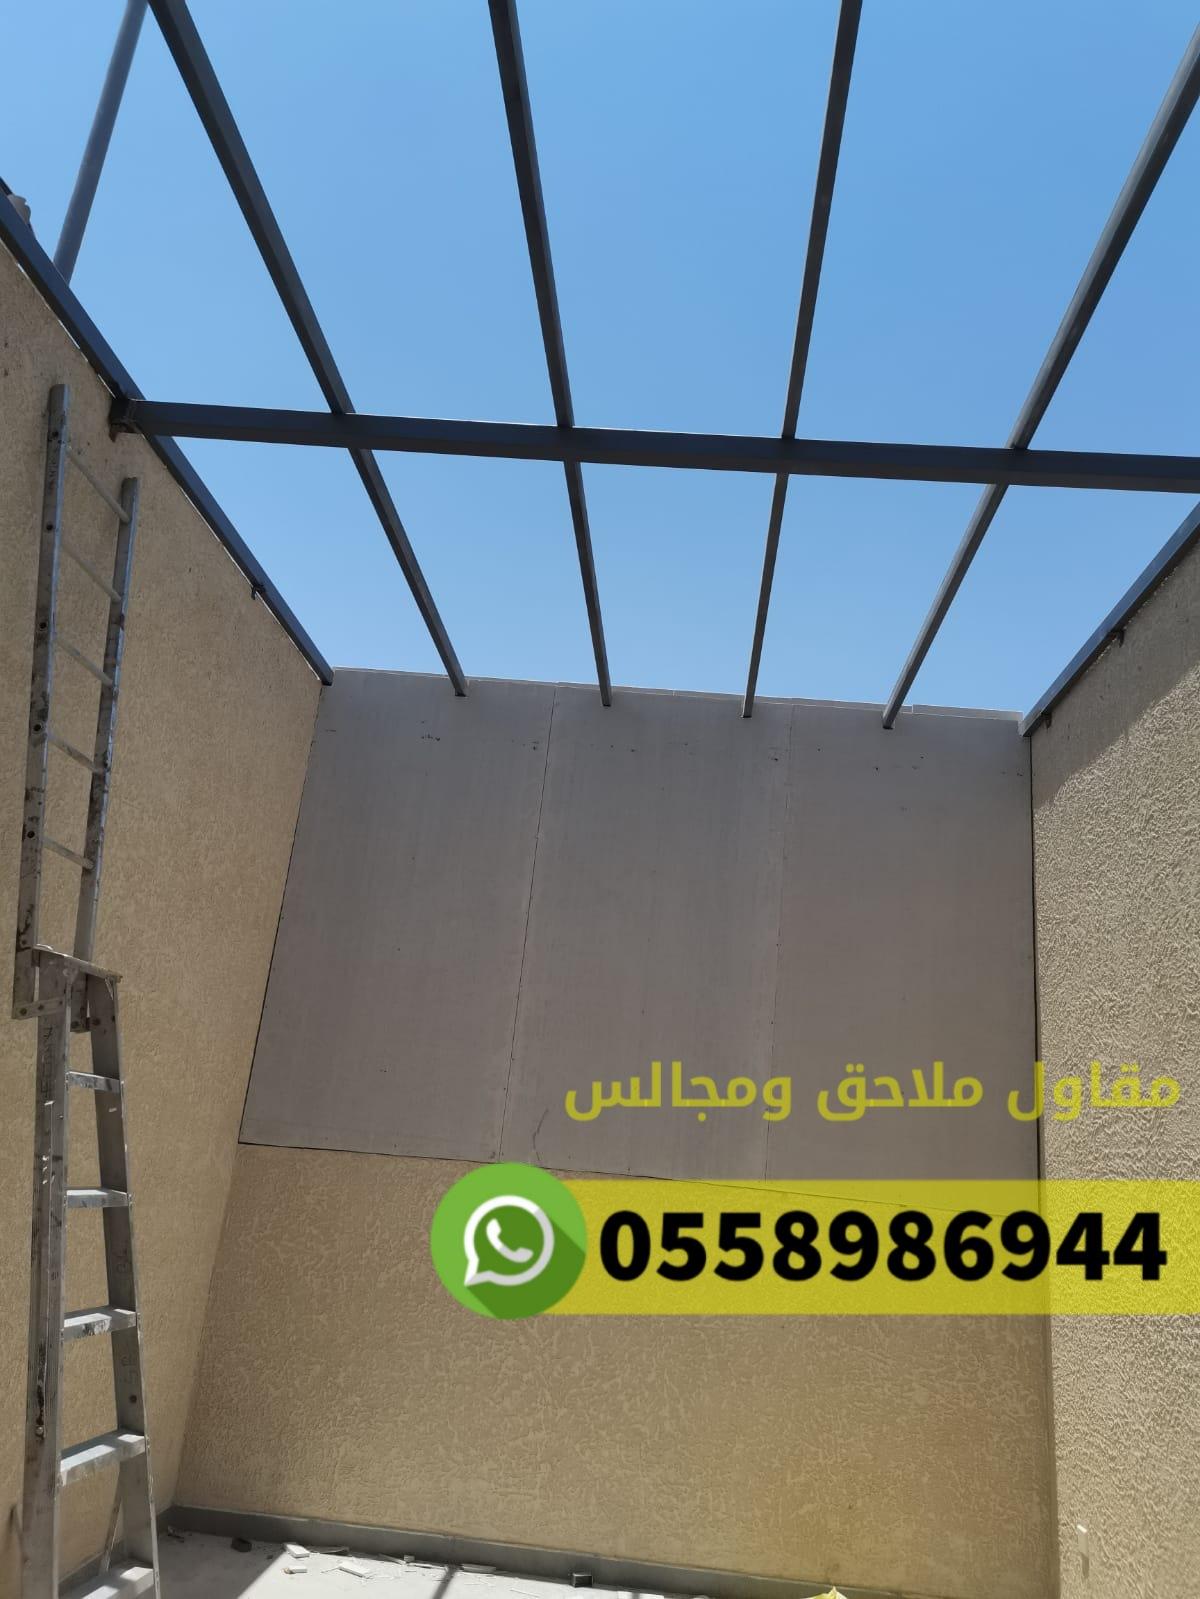 بناء غرف ملاحق مجالس في مكة المكرمة حي النوارية ,0558986944 112475194